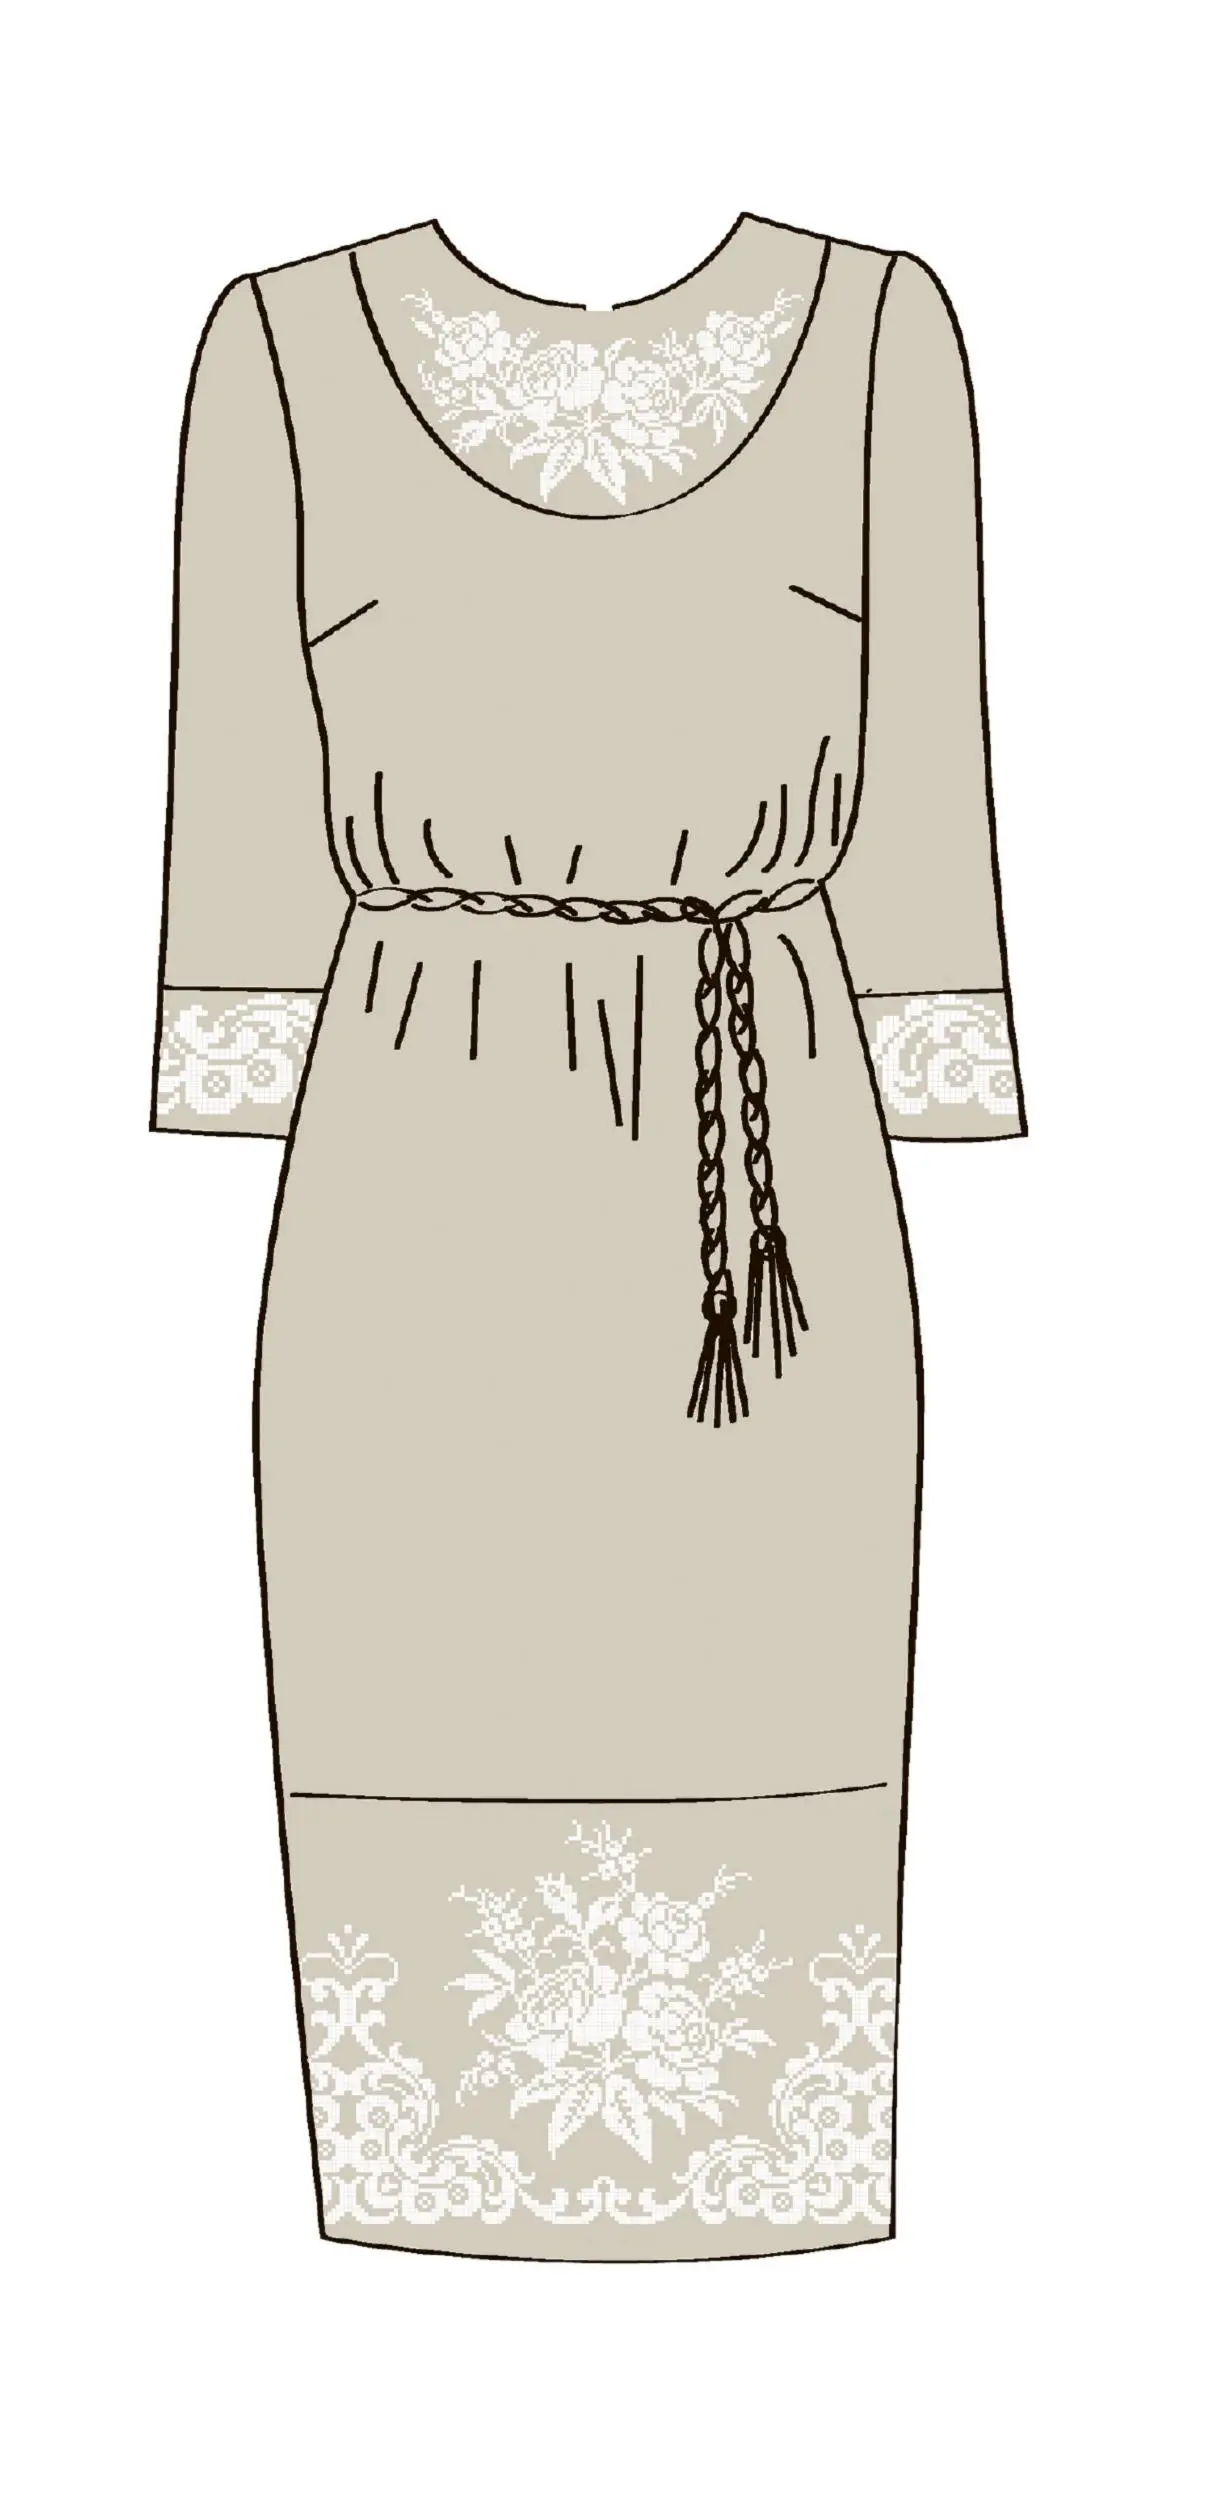 820-14/08 Плаття жіноче з поясом, льняне, розмір 54